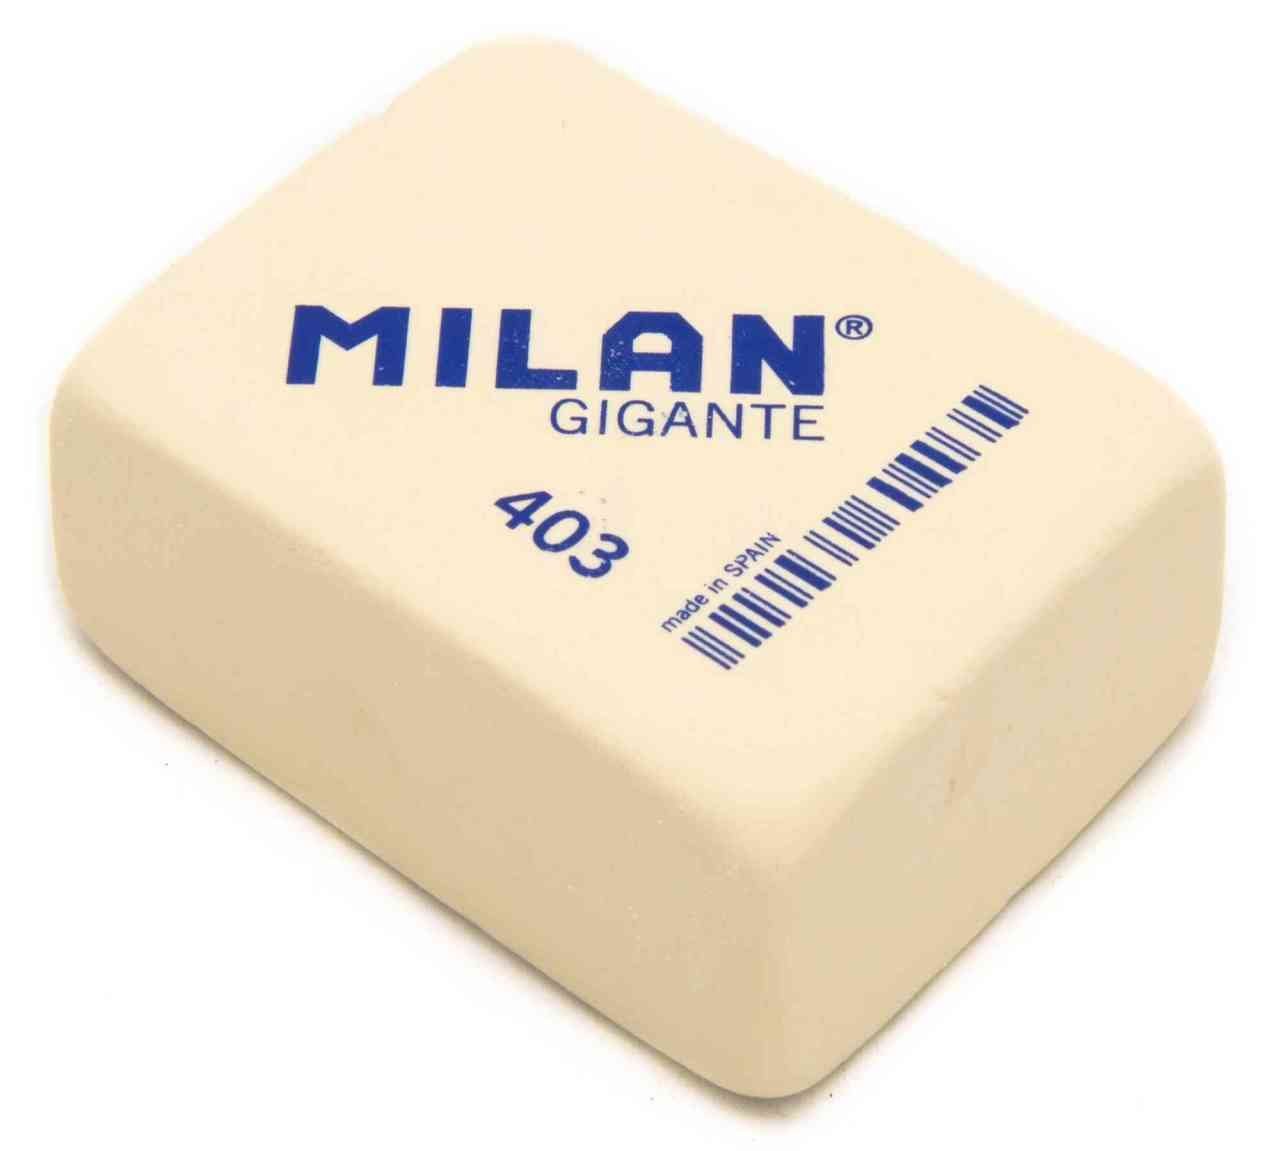 Milan - Milan Gigante Silgi 403